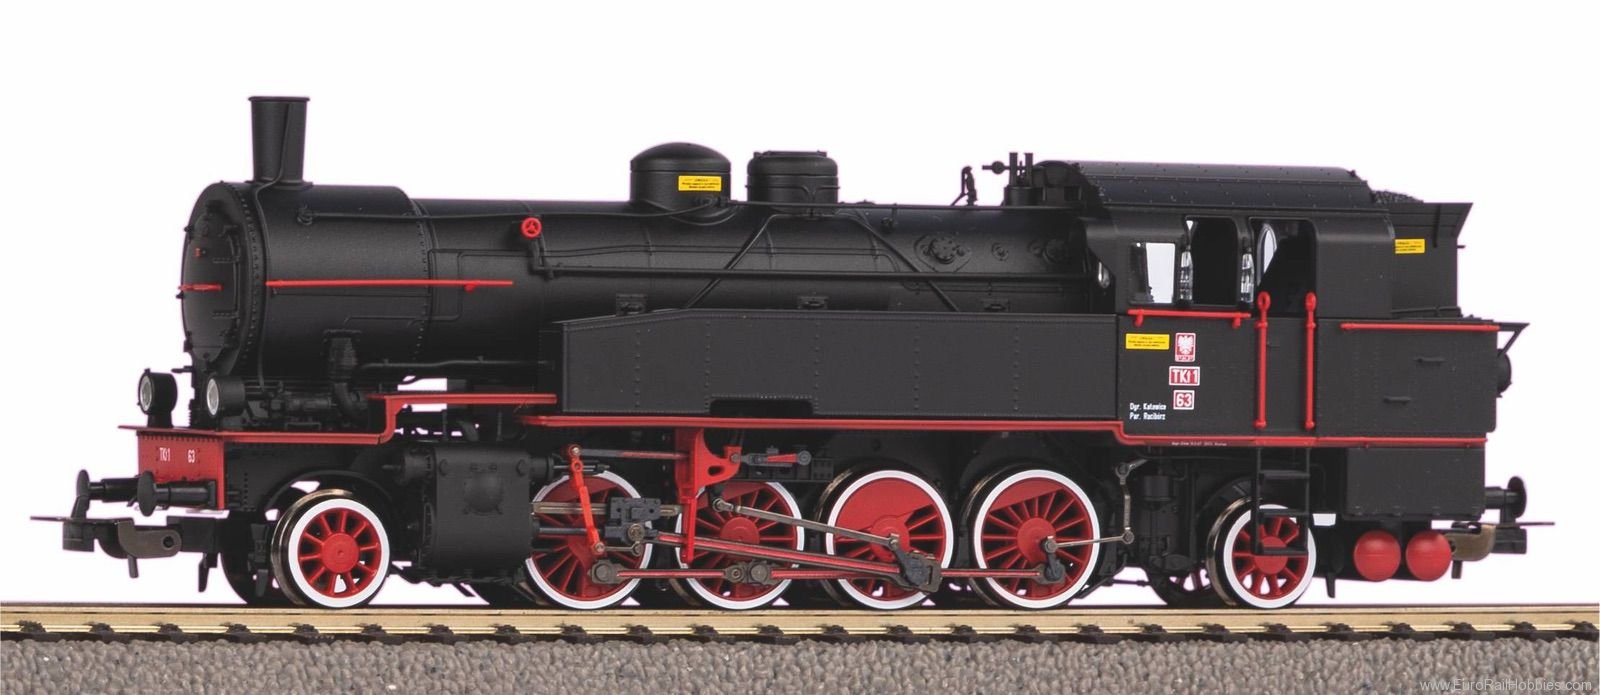 Piko 50663 steam Locomotive Tkt1-63 PKP III (Marklin AC 